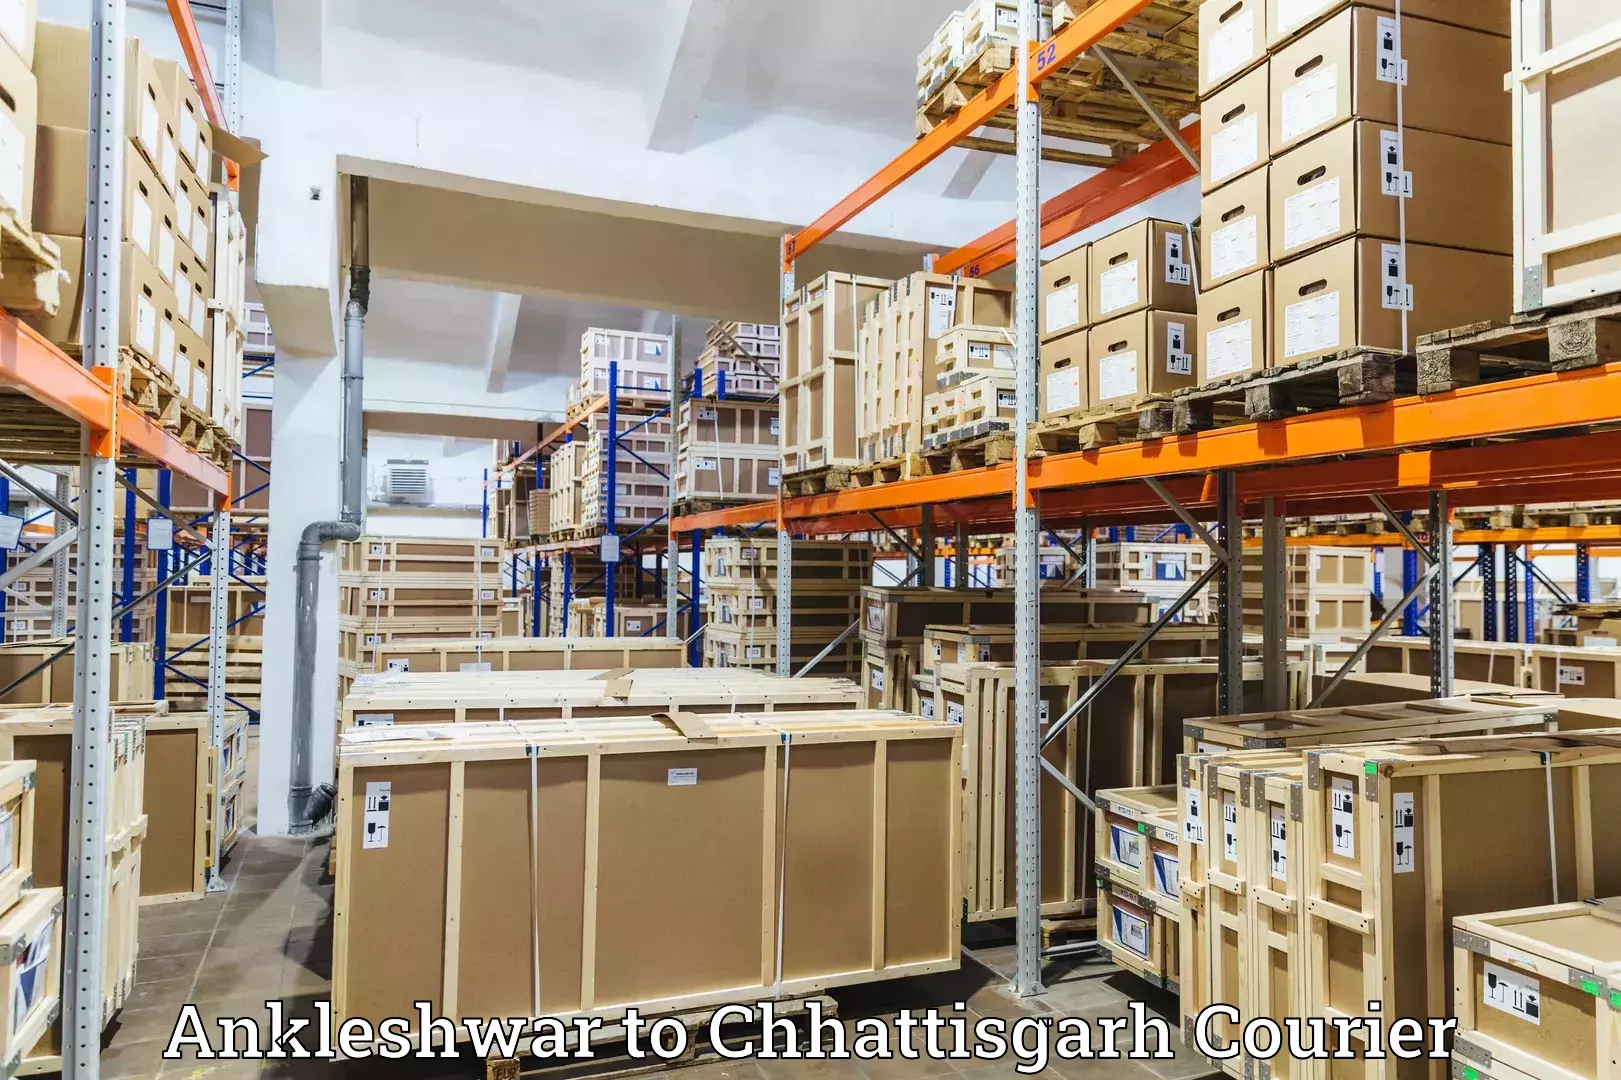 Courier service partnerships Ankleshwar to Chhattisgarh